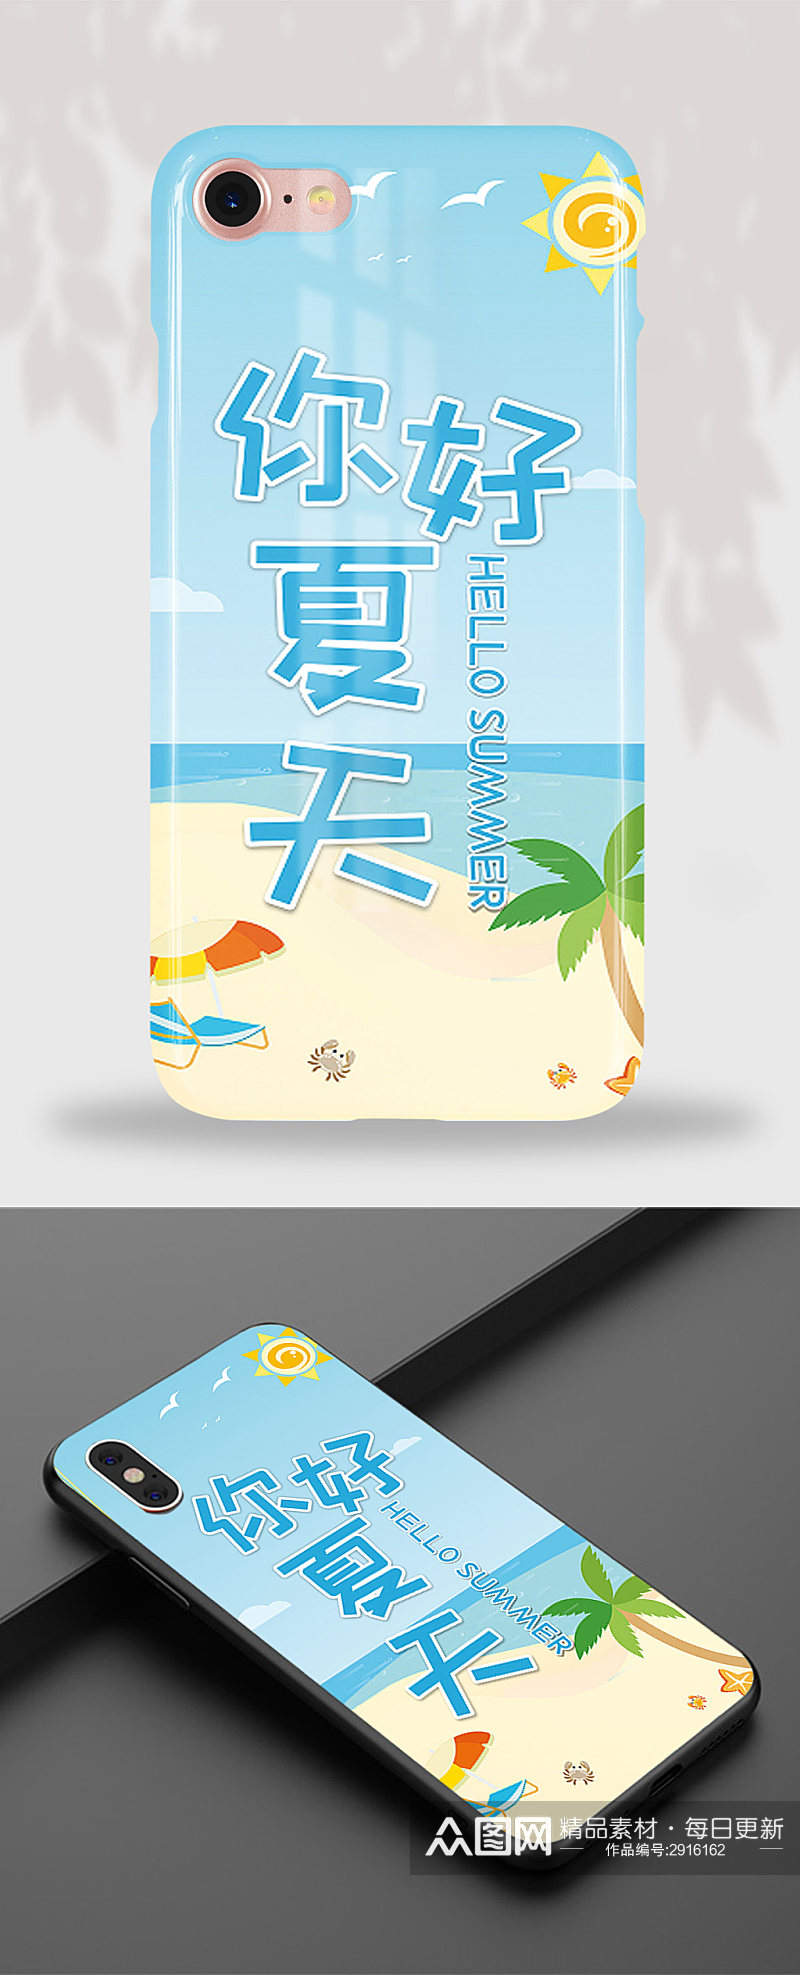 26可爱卡通蓝色海边沙滩海风手机壳素材